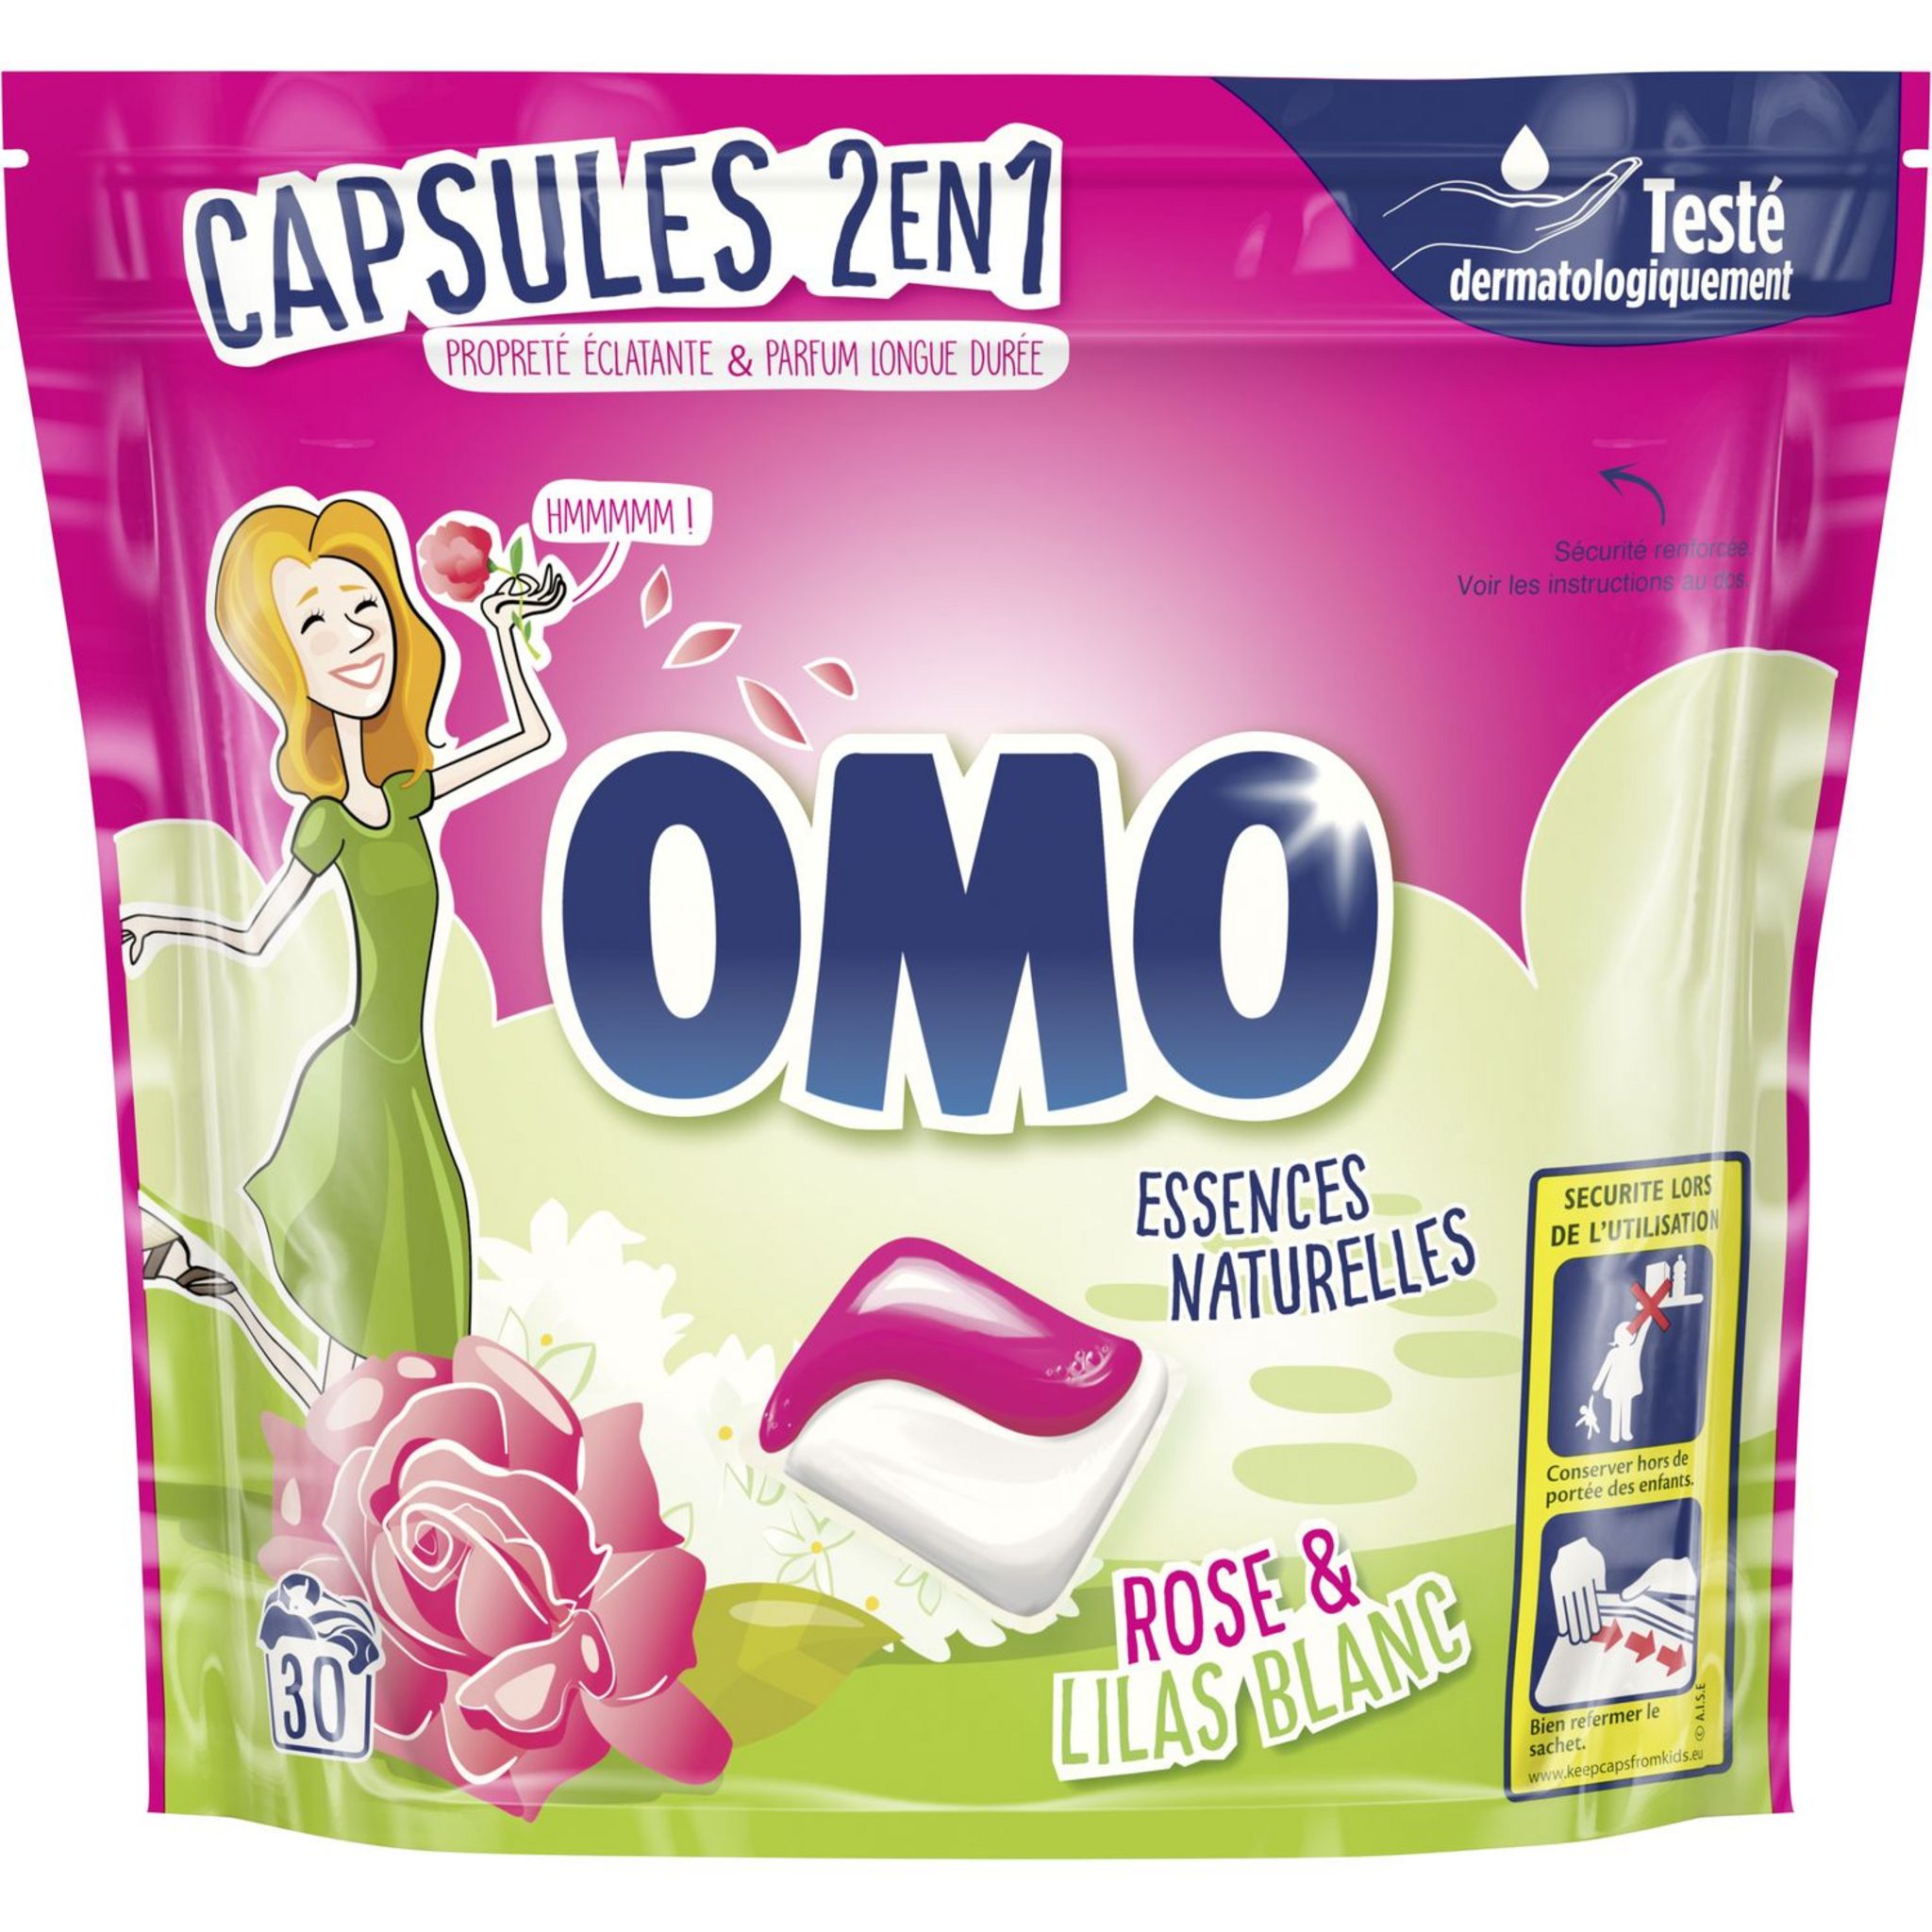 Lessive capsules - Fraîcheur - 30 lavages 735ml